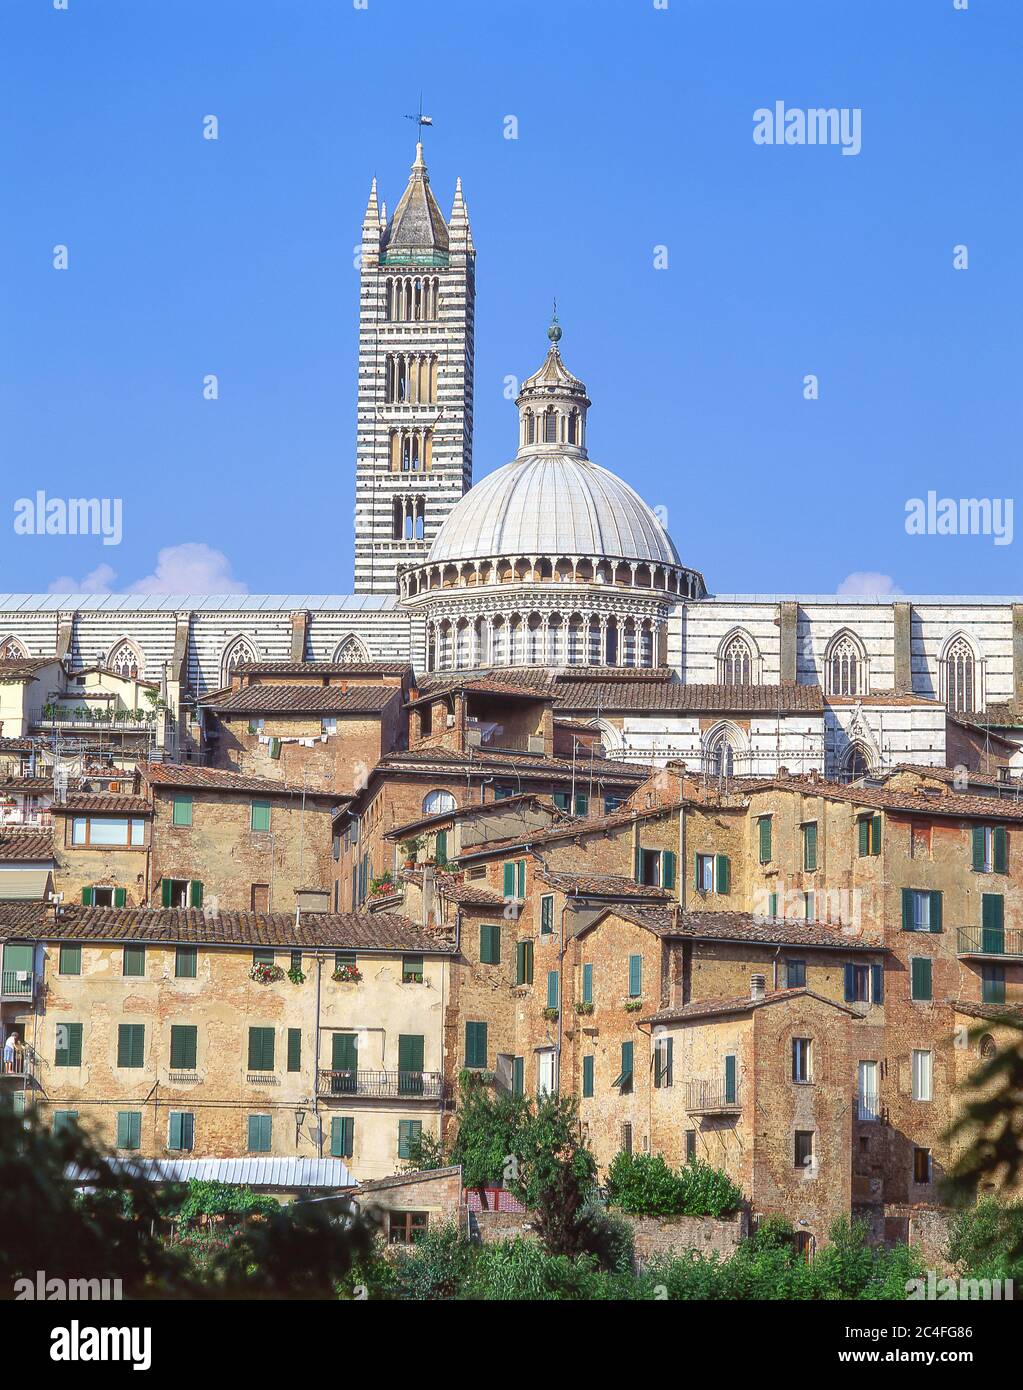 Blick auf die Altstadt und den Dom von Siena (Kathedrale von Siena), Siena (Siena), Provinz Siena, Toskana Region, Italien Stockfoto